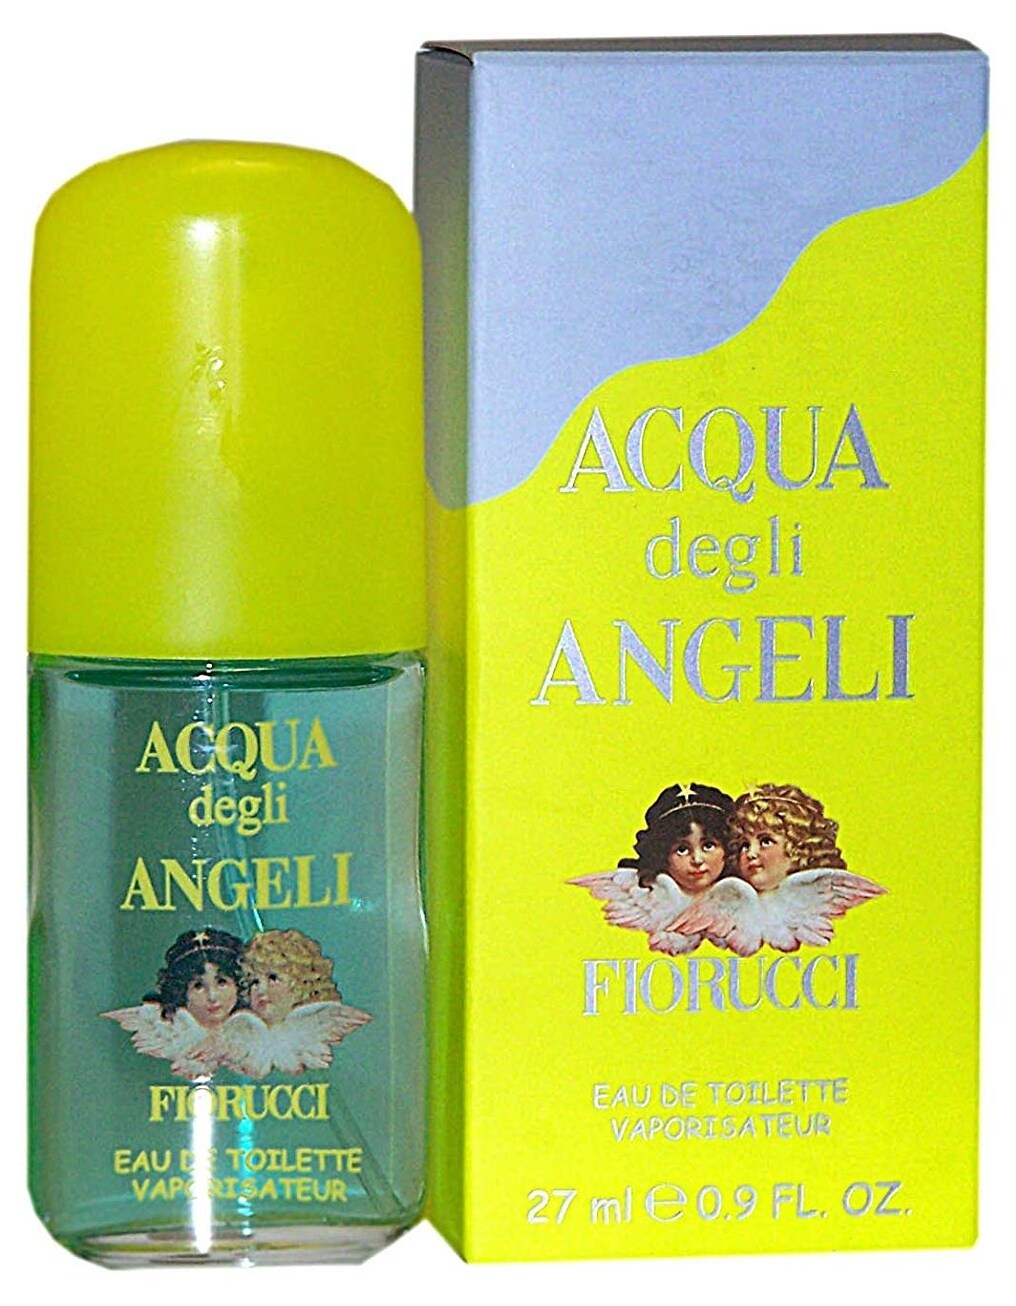 Acqua Degli Angeli by Fiorucci » Reviews  Perfume Facts